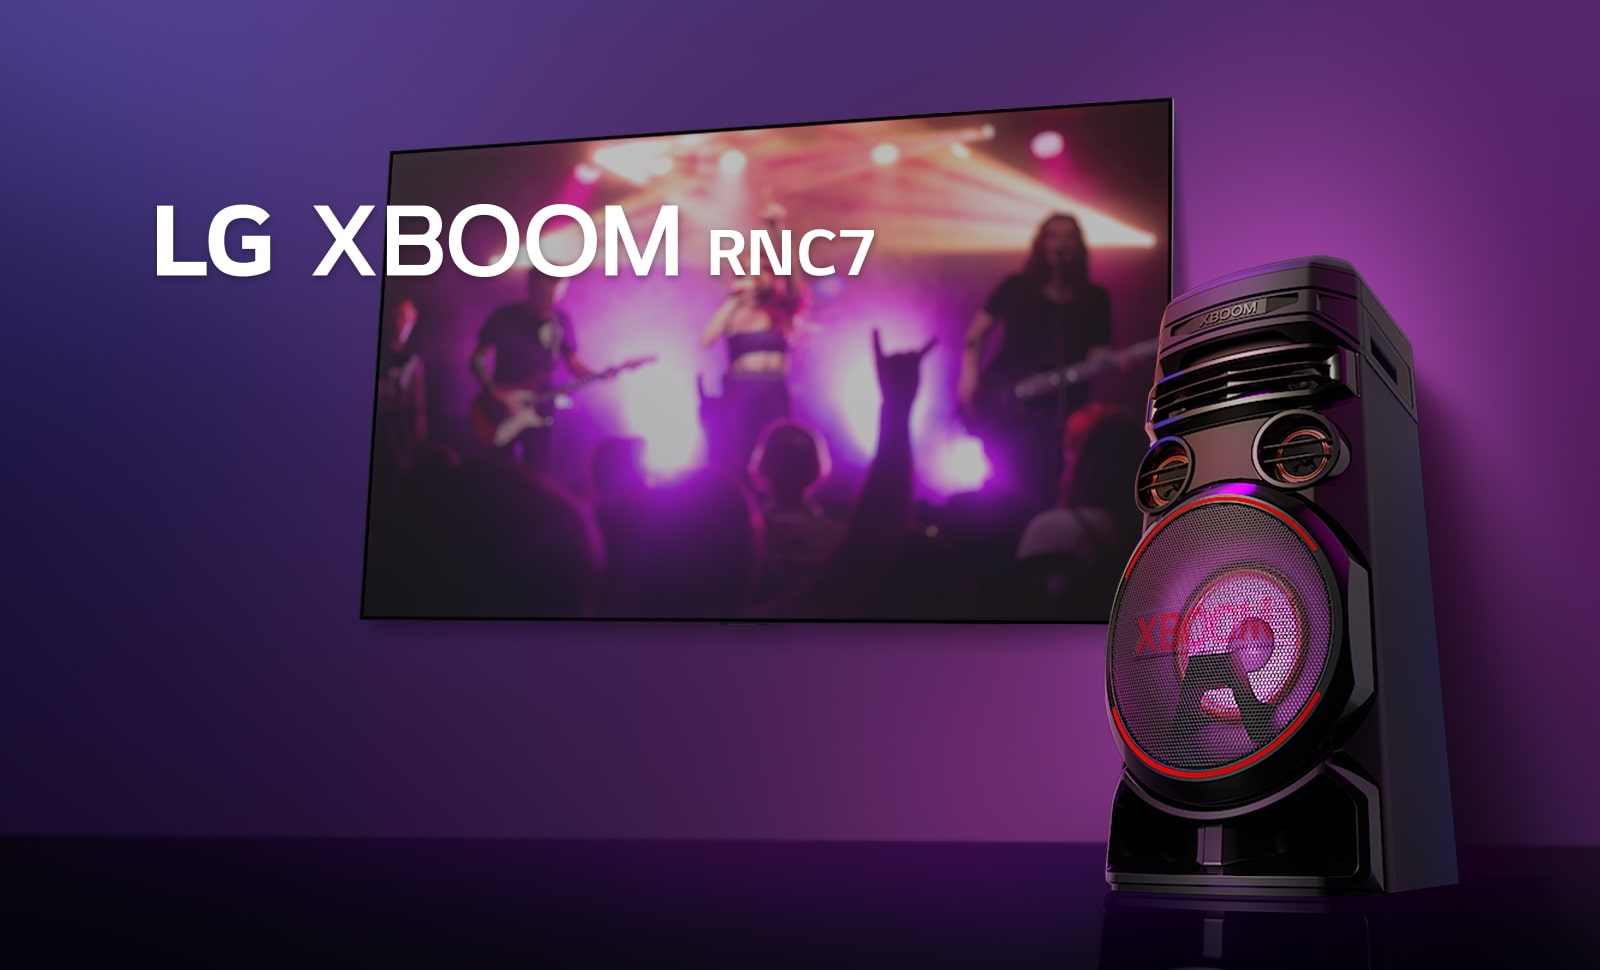 طريقة عرض بزاوية منخفضة للجانب الأيمن لسماعات LG XBOOM RNC7 على خلفية بنفسجية. أضواء XBOOM لونها بنفسجي كذلك. وتعرض شاشة تلفزيون مشهد حفلة موسيقية.